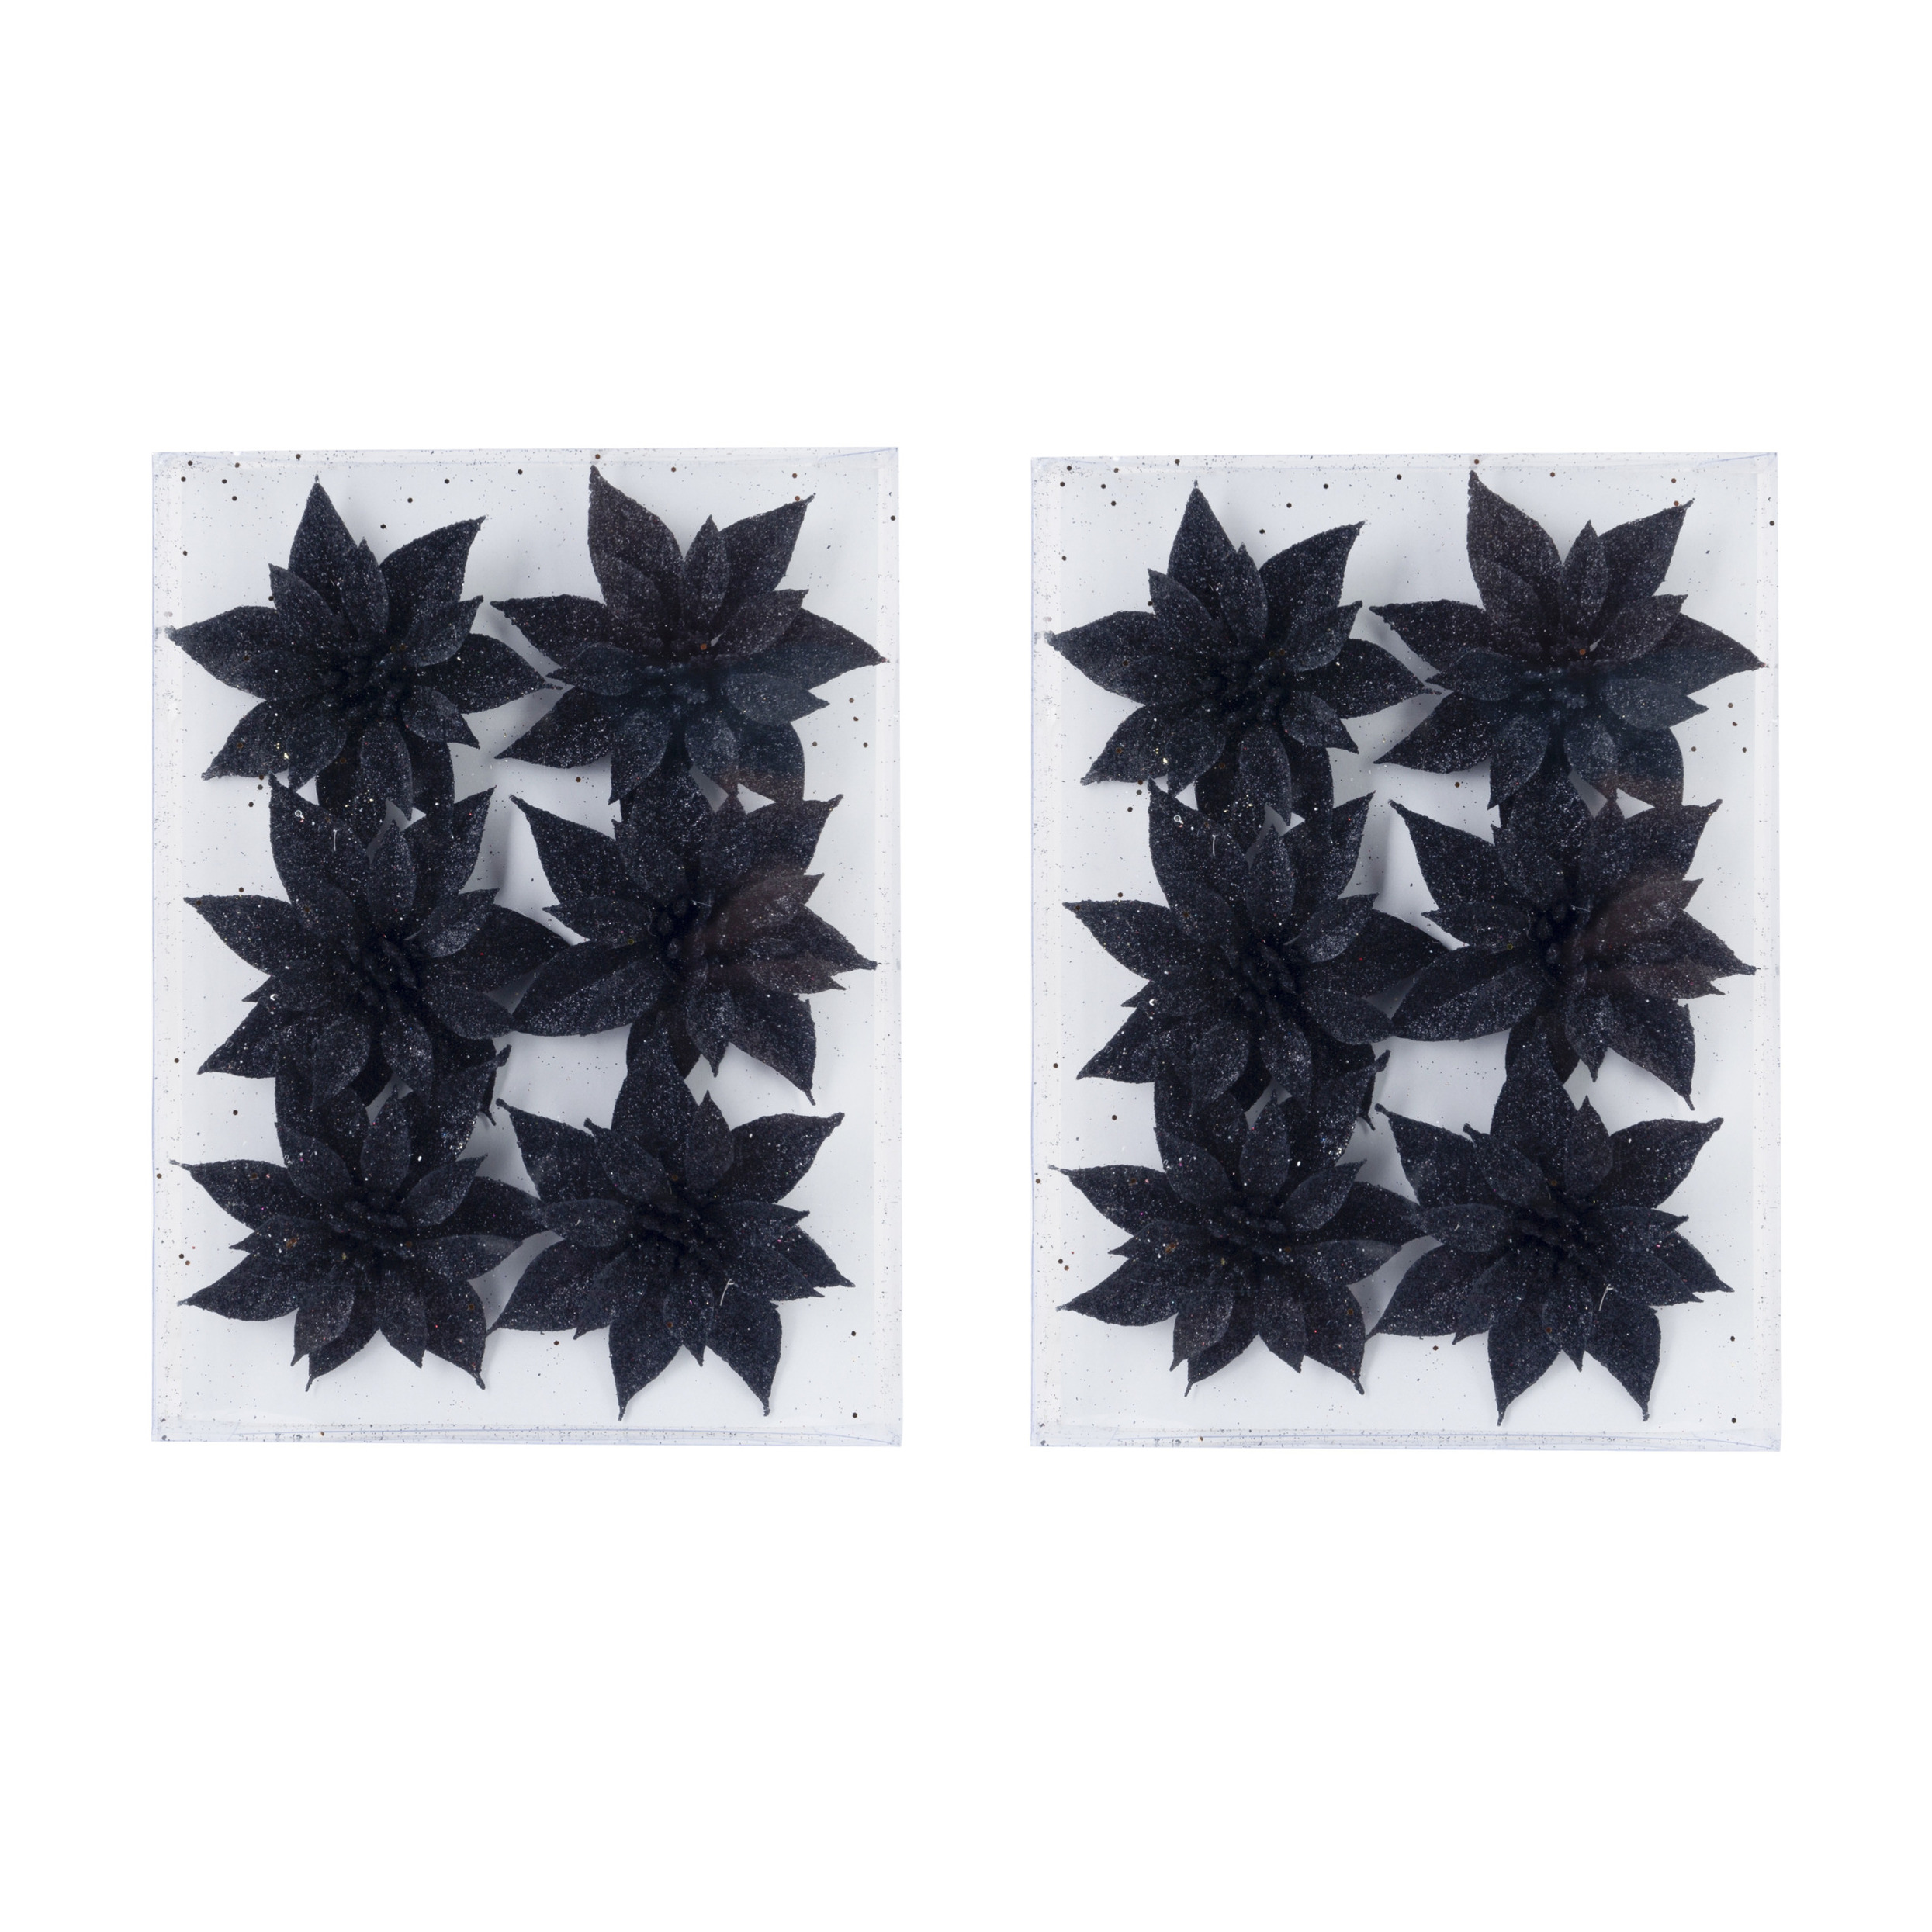 12x stuks decoratie bloemen rozen zwart glitter op ijzerdraad 8 cm